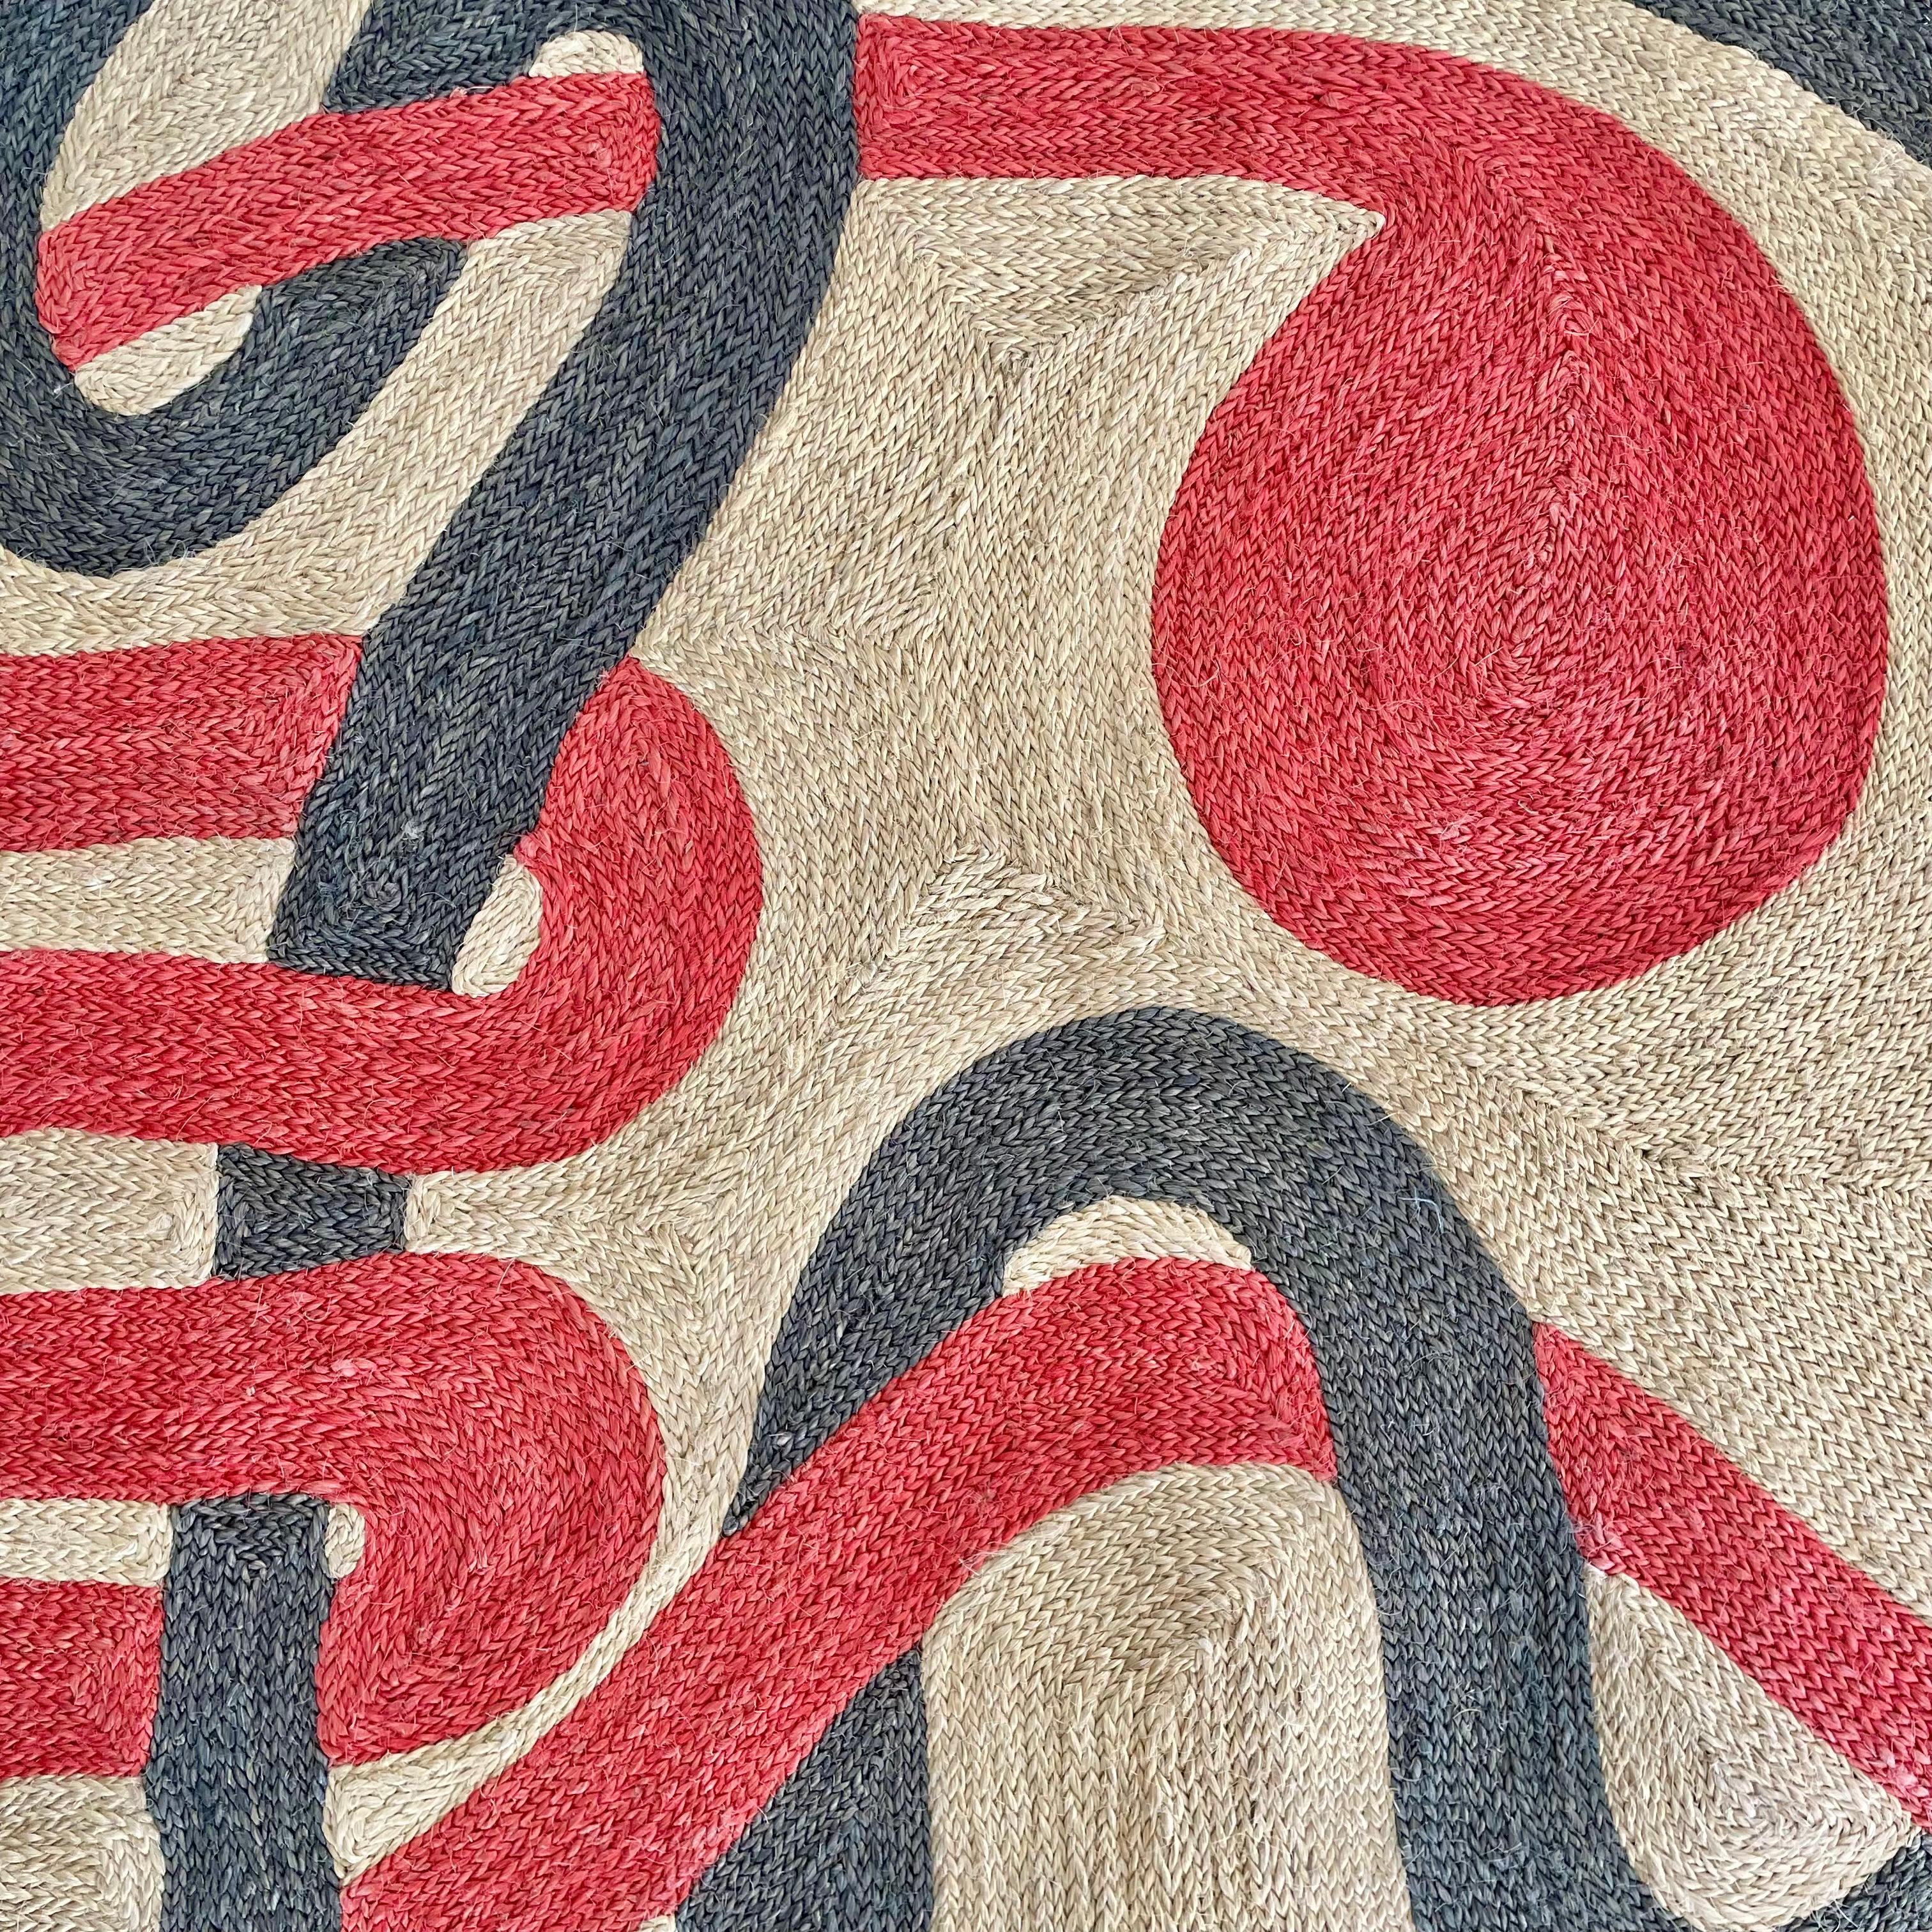 Alexander Calder Jute Tapestry, 1975 Guatemala 6